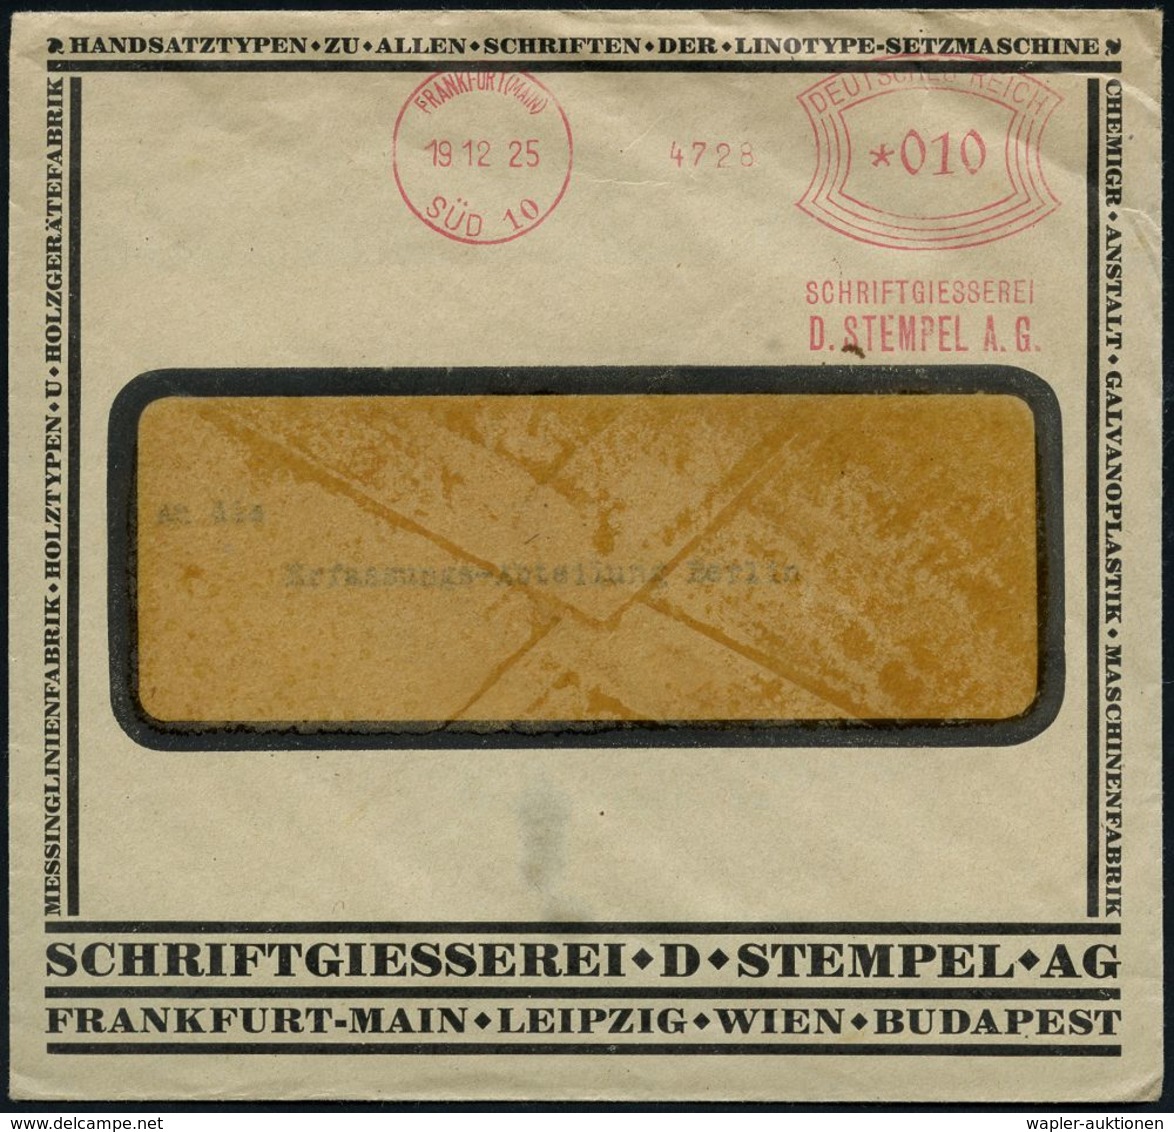 BÜRO / SCHREIBGERÄTE / SCHREIBMASCHINE : FRANKFURT (MAIN)/ SÜD 10/ SCHRIFTGIESSEREI/ D.STEMPEL AG 1925 (19.12.) Sehr Frü - Non Classificati